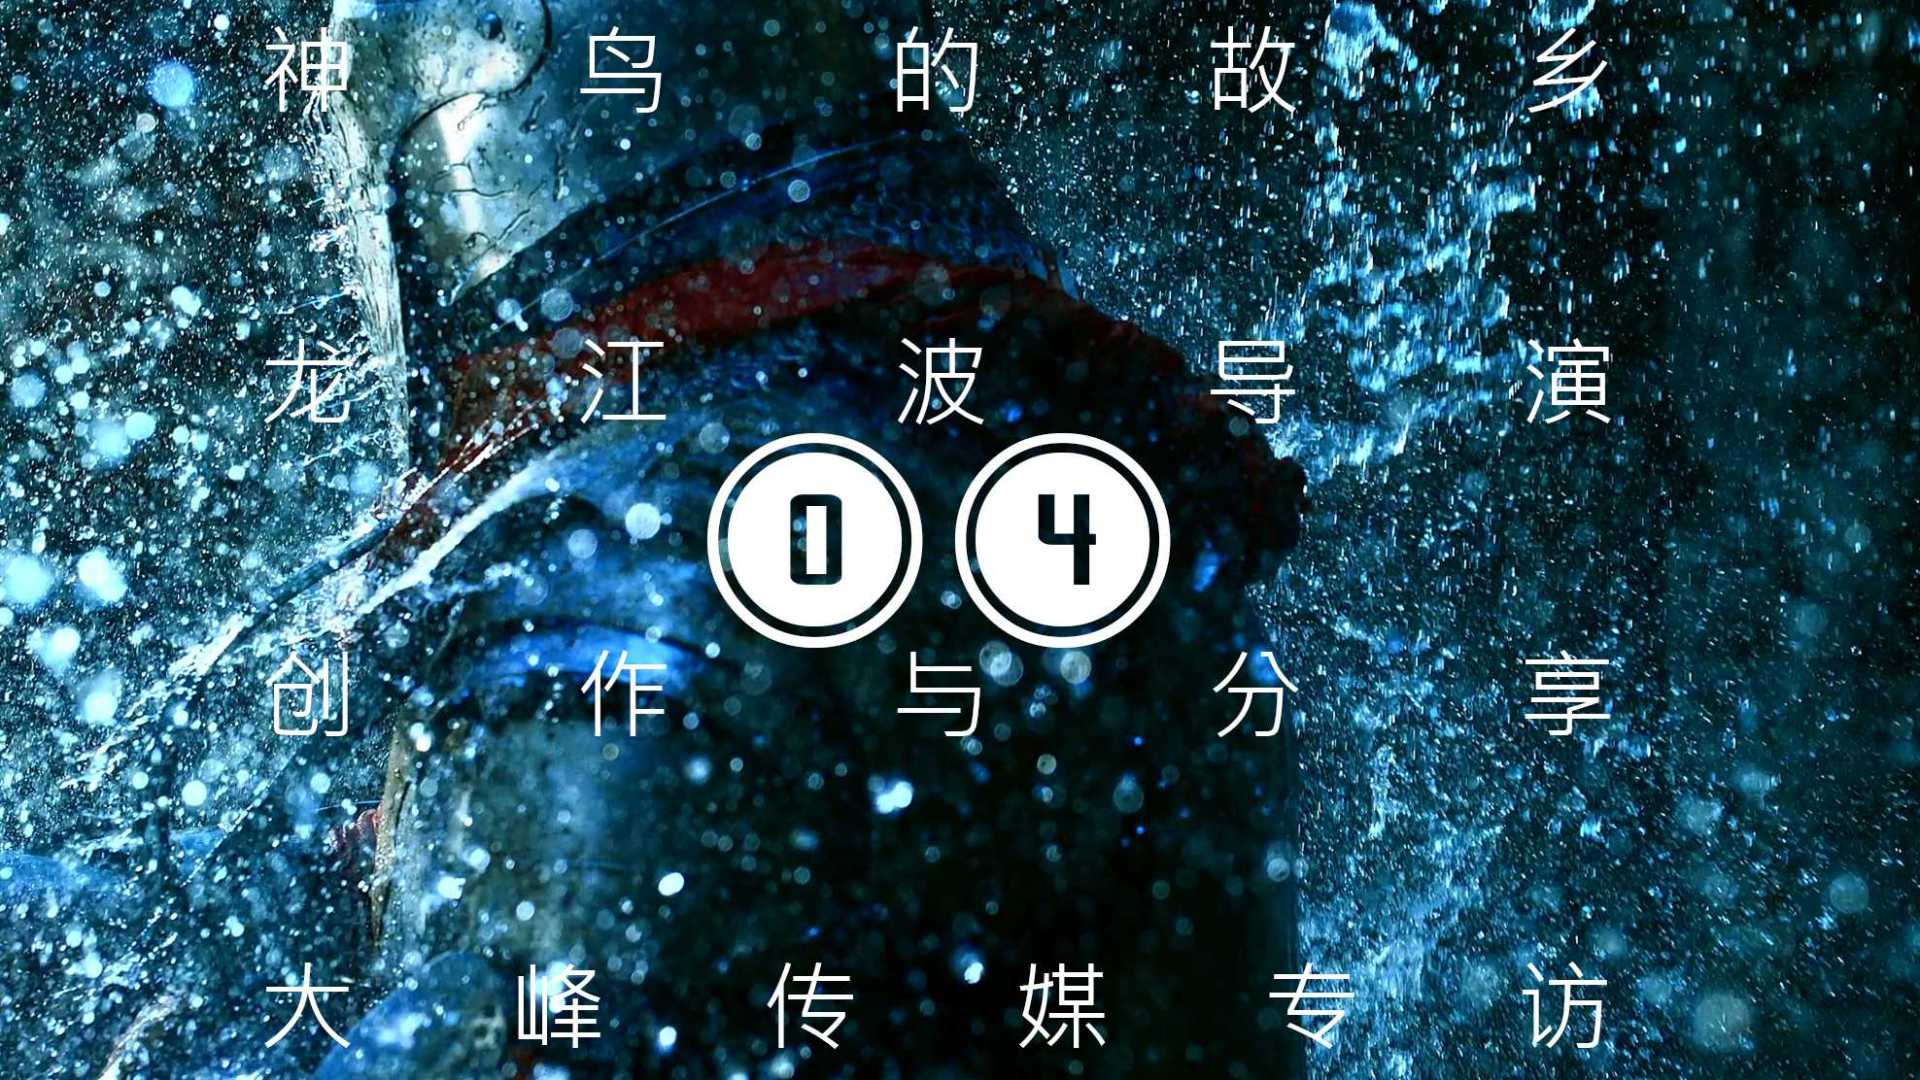 04神鸟的故乡·龙江波导演·创作与分享·大峰传媒专访